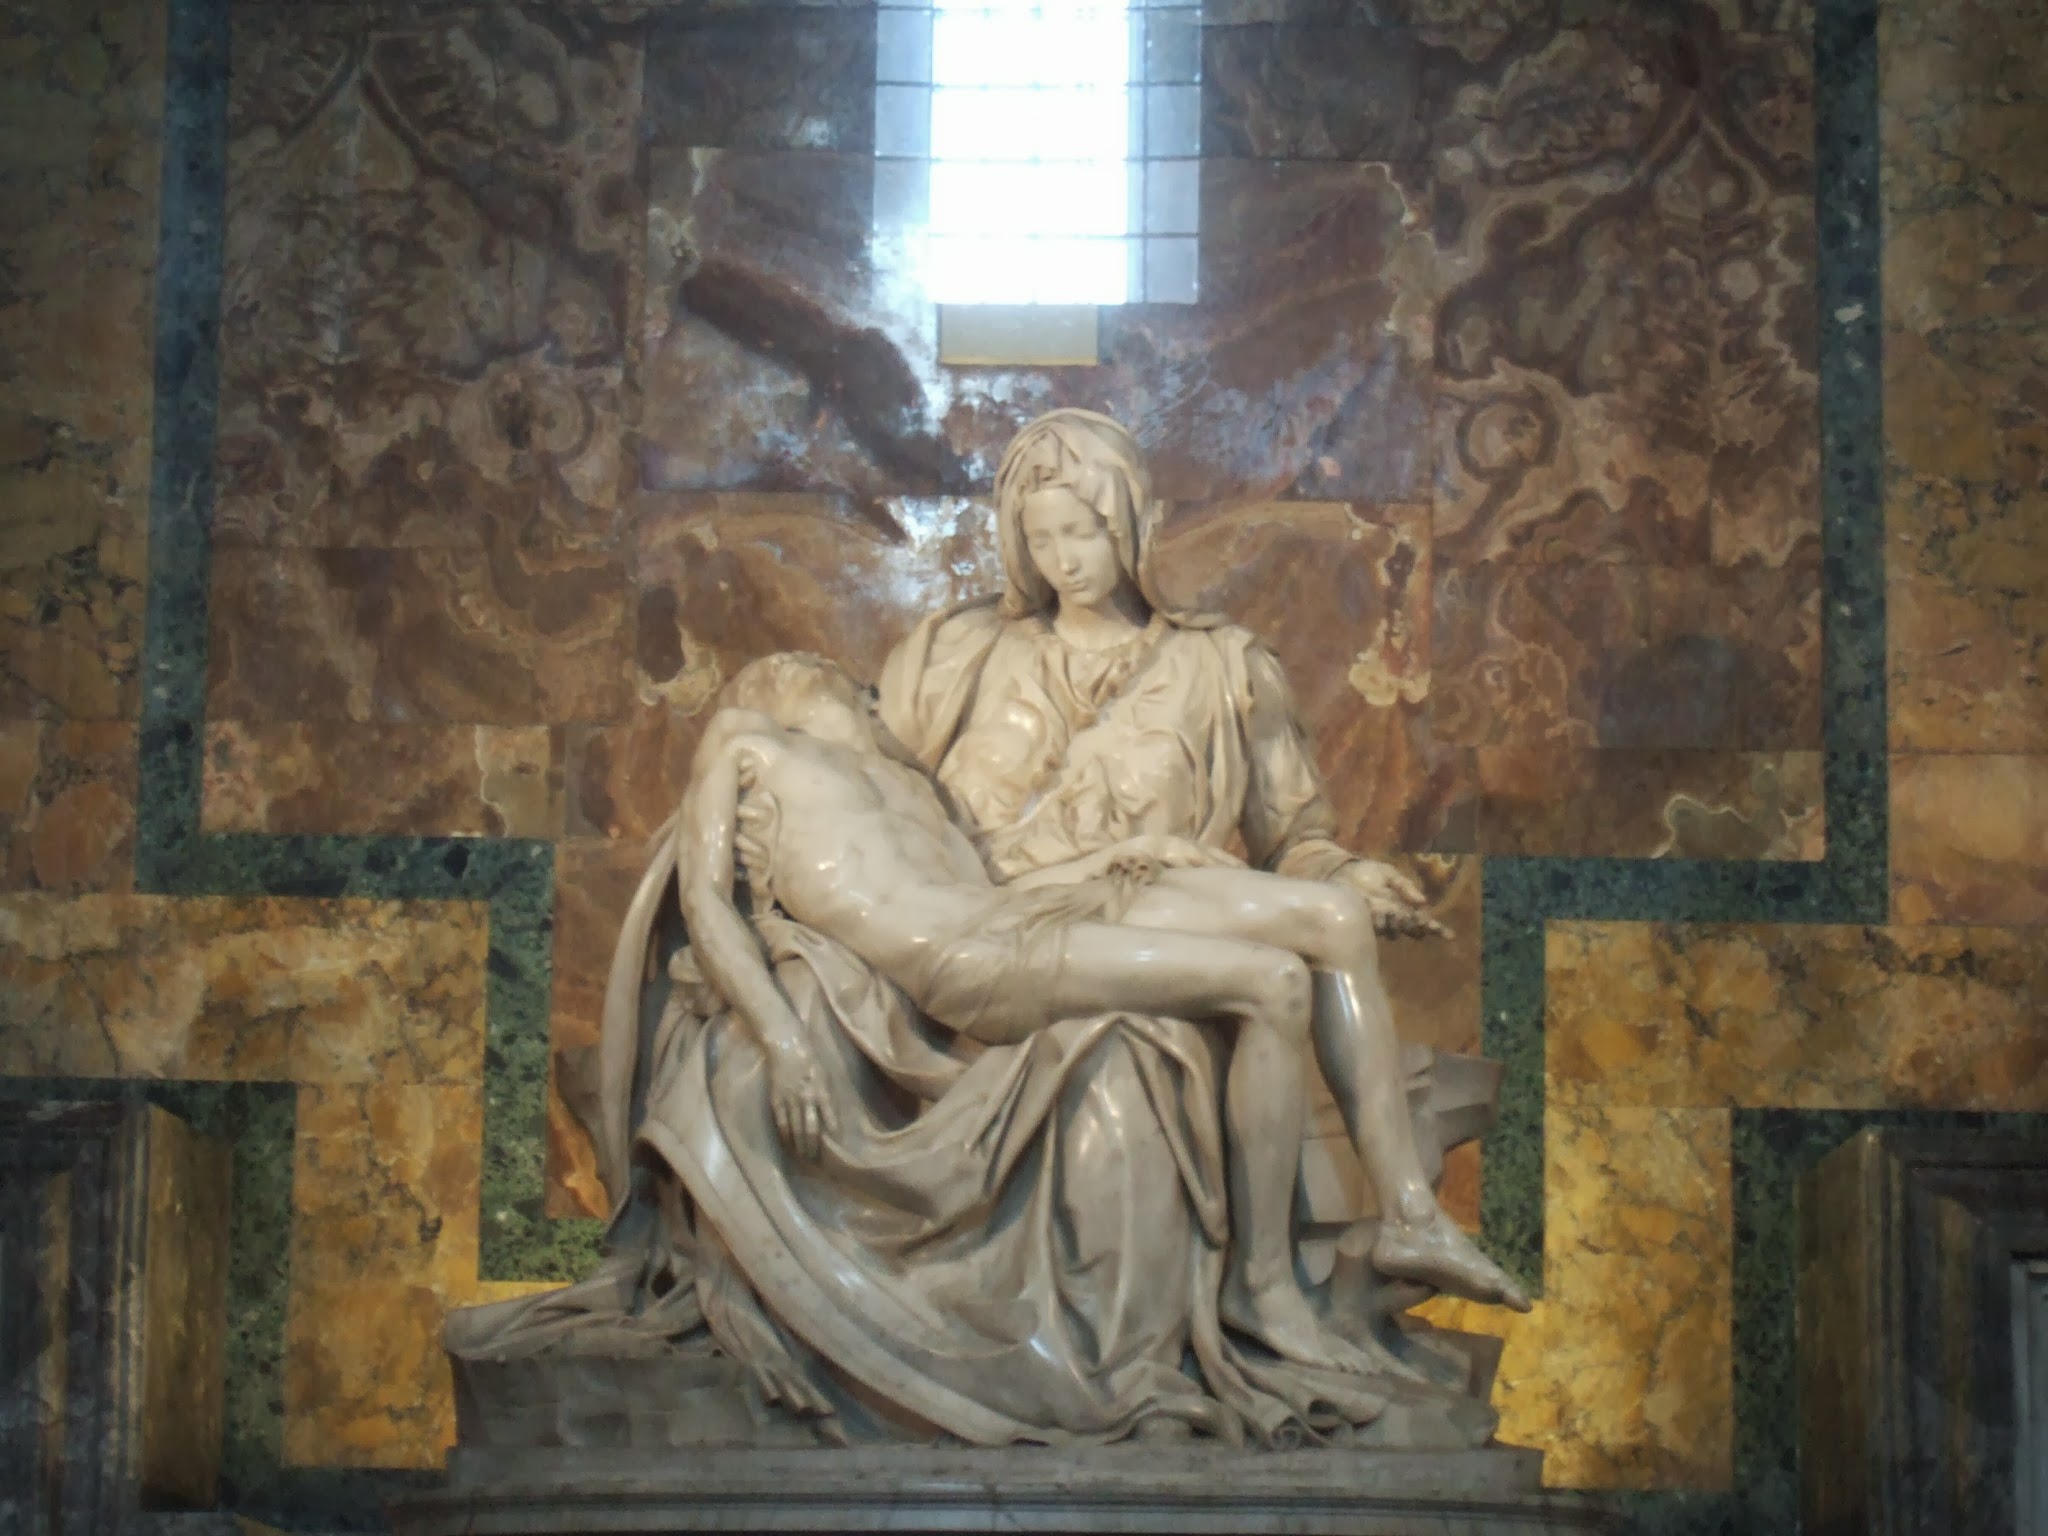 미켈란젤로의 피에타 조각상 모습